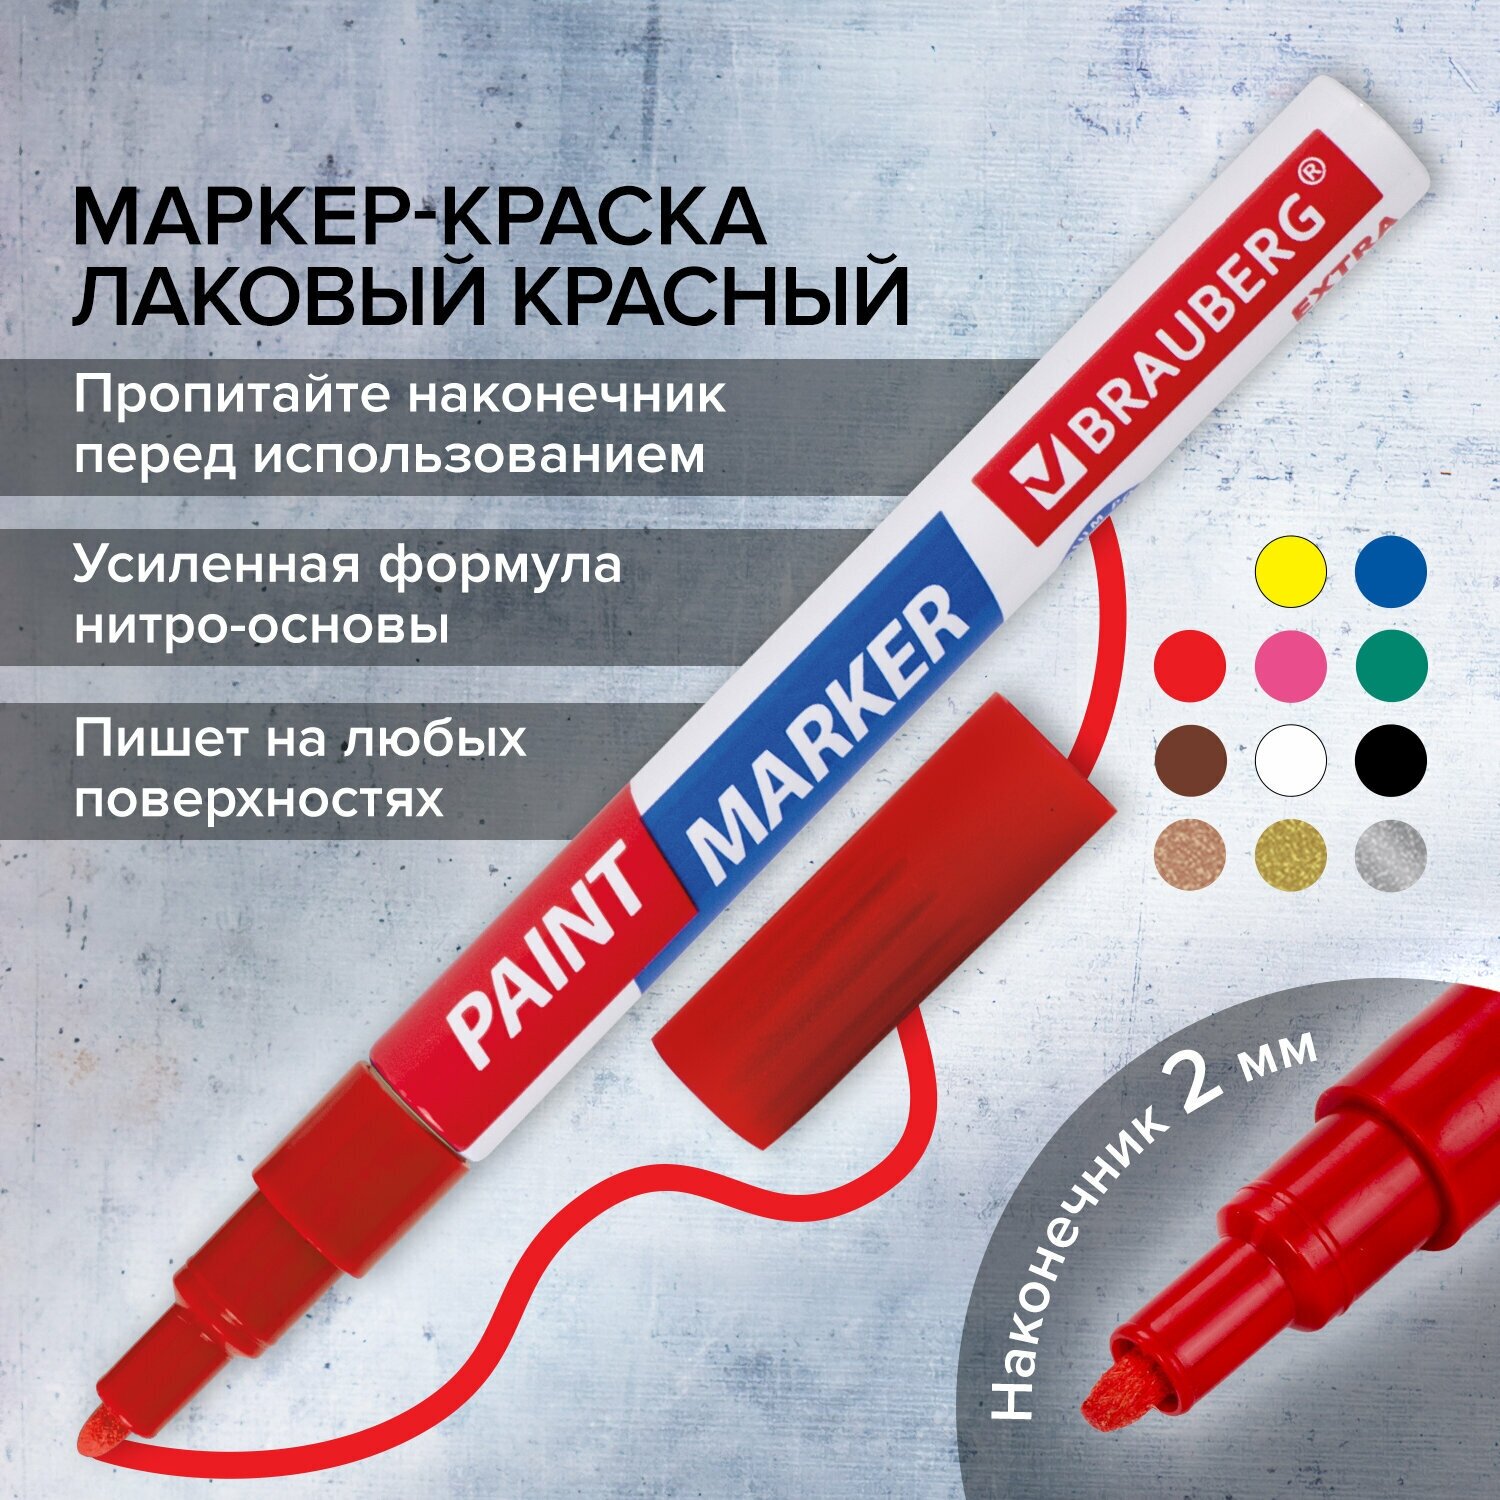 Маркер краска лаковый paint marker 2 мм строительный красный, фломастер, усиленная нитро основа, Brauberg Extra, 151969